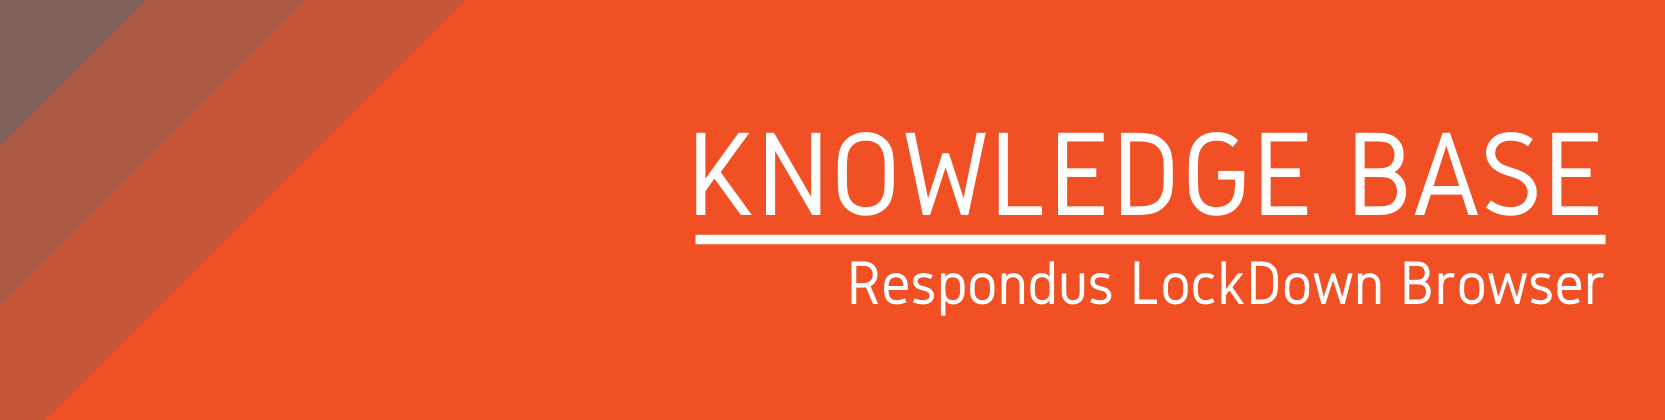 Knowledge Base: Respondus LockDown Browser